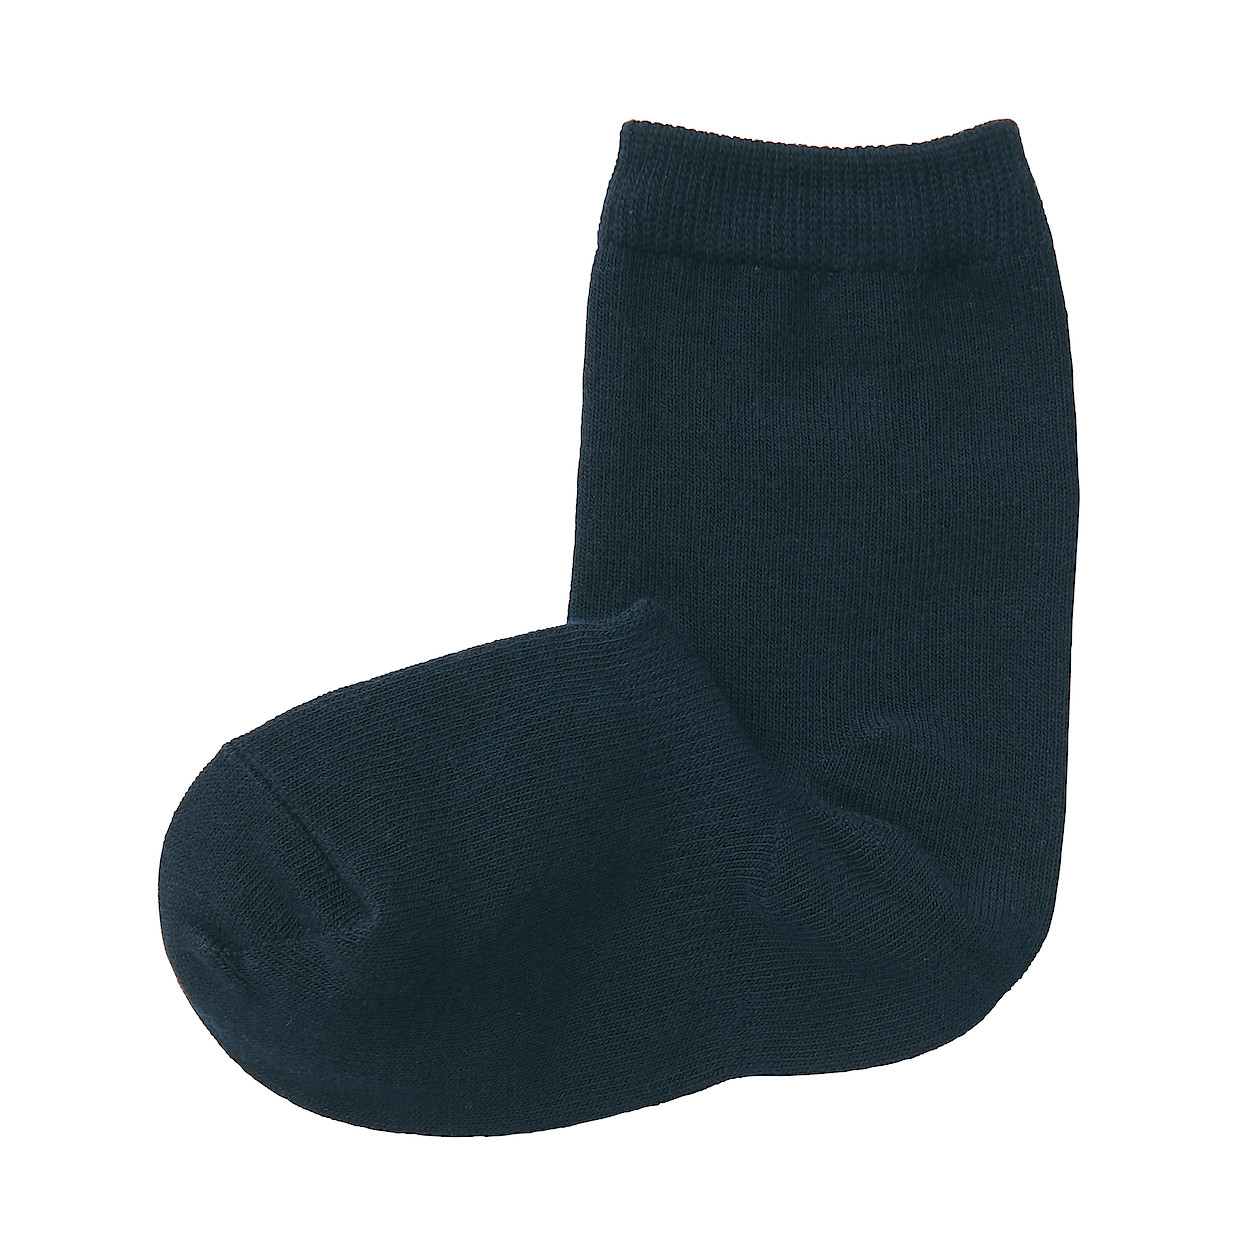 Right Angle Adjustable Socks (Kids/Plain) S0